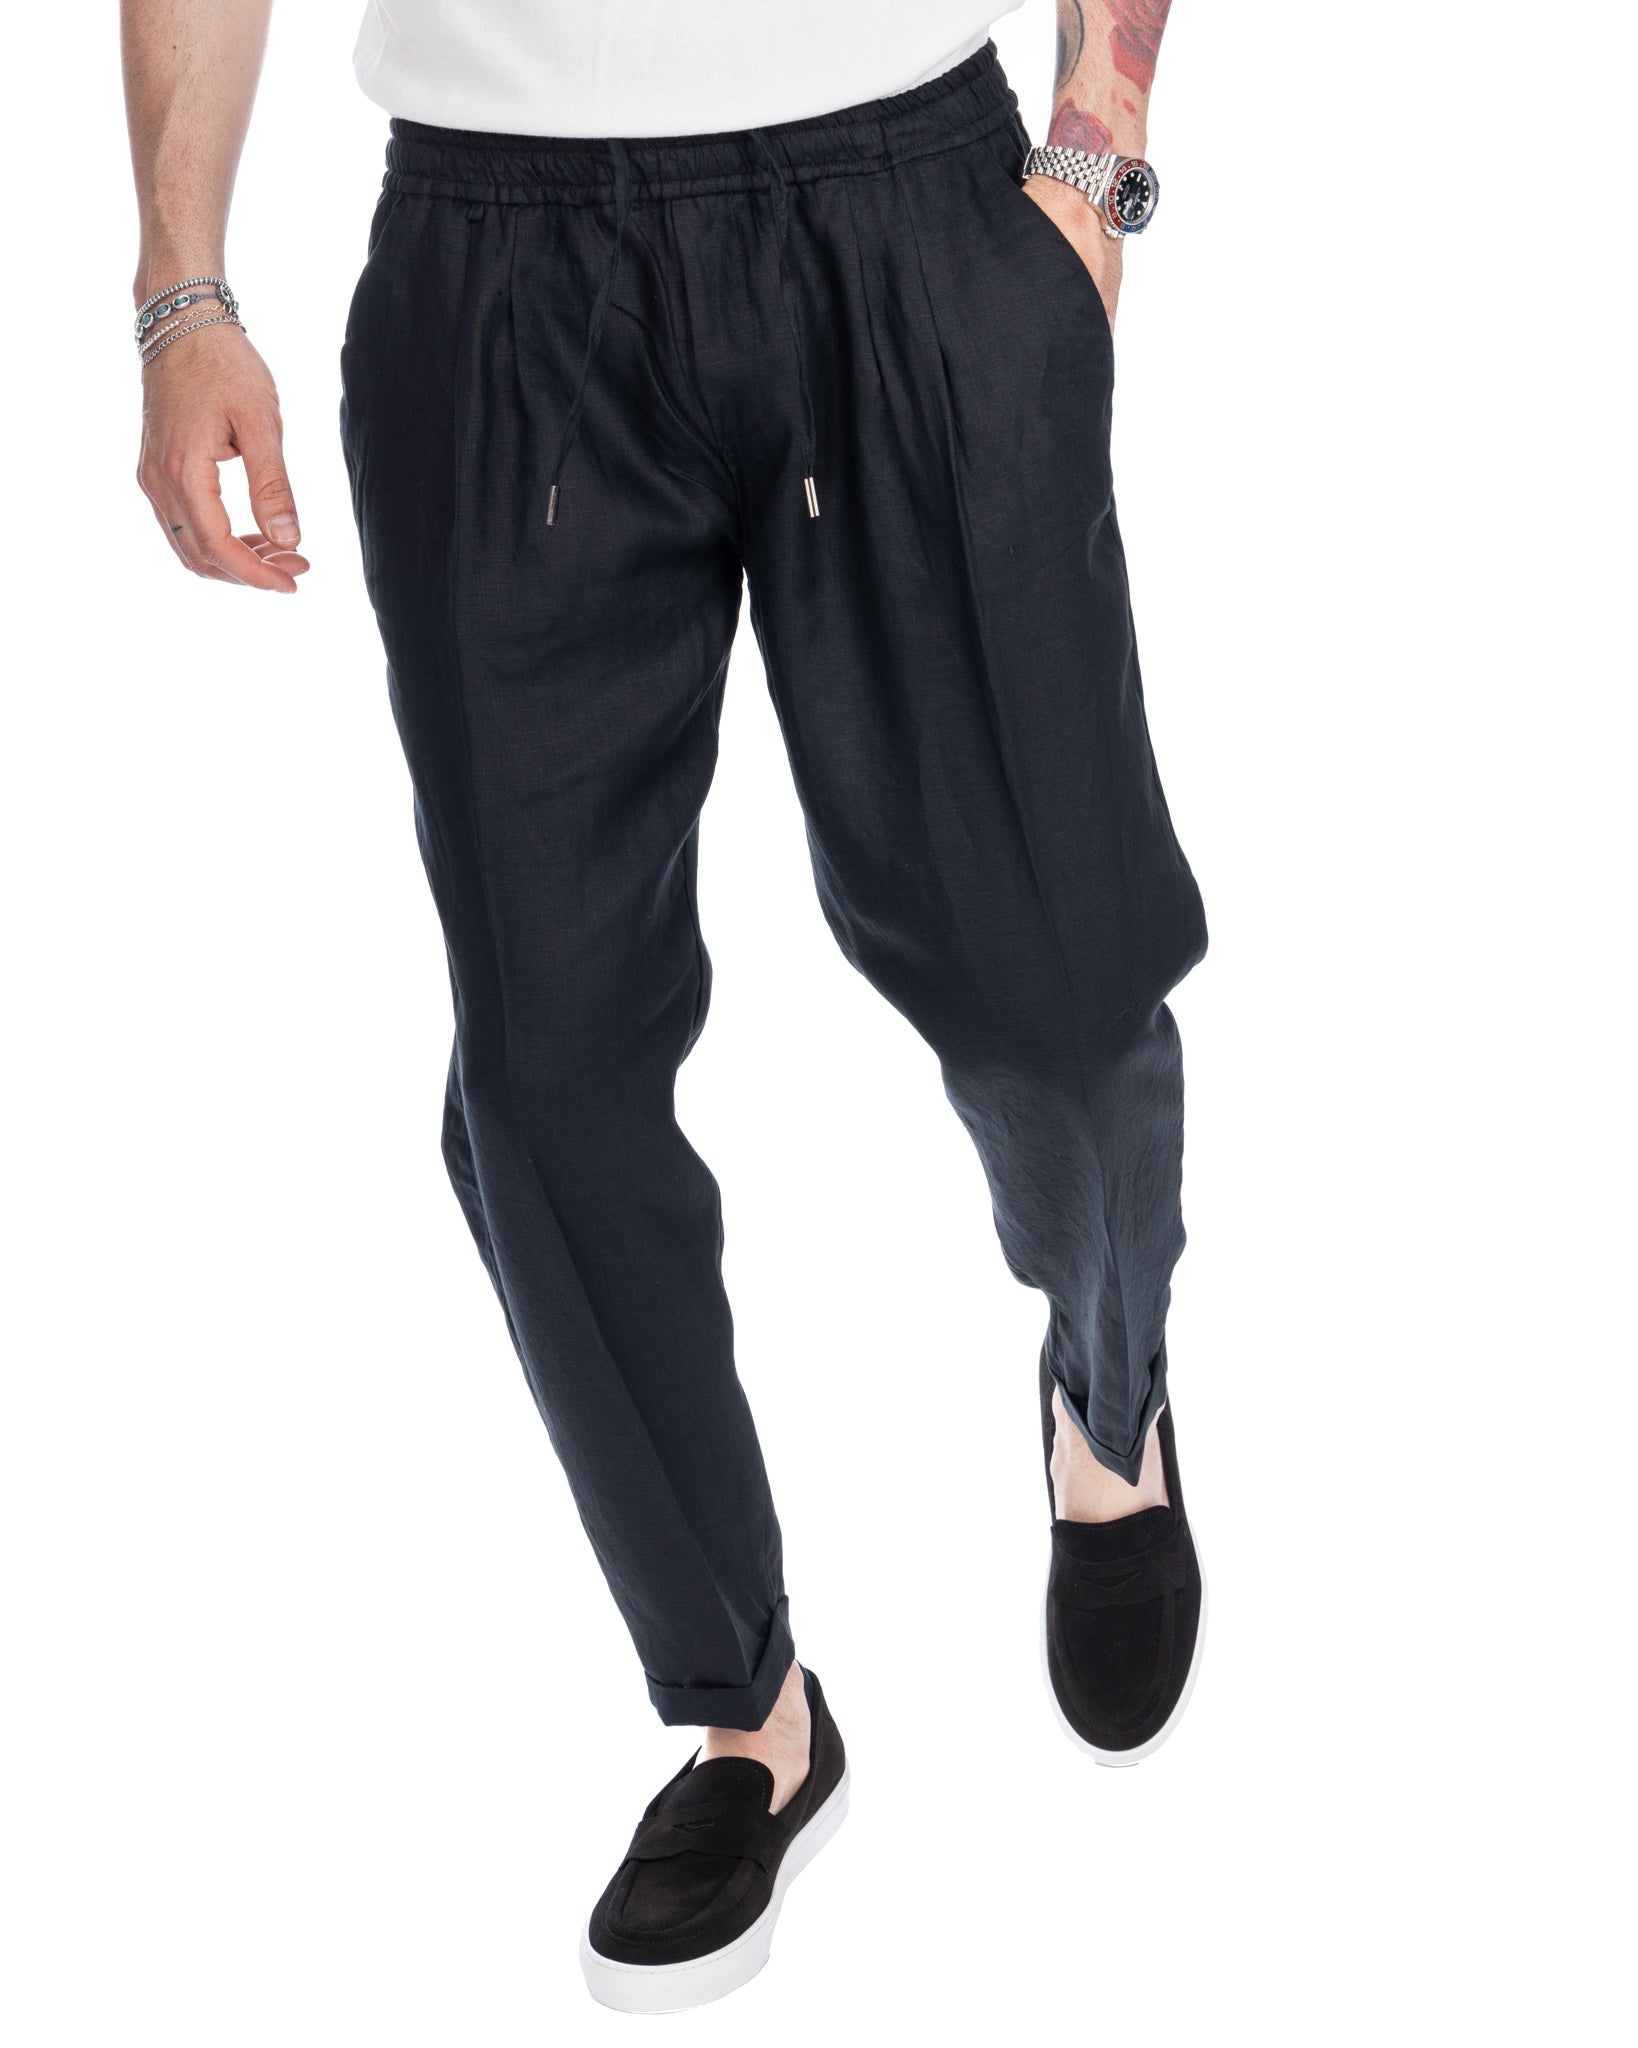 Colin - pantalon en pur lin noir